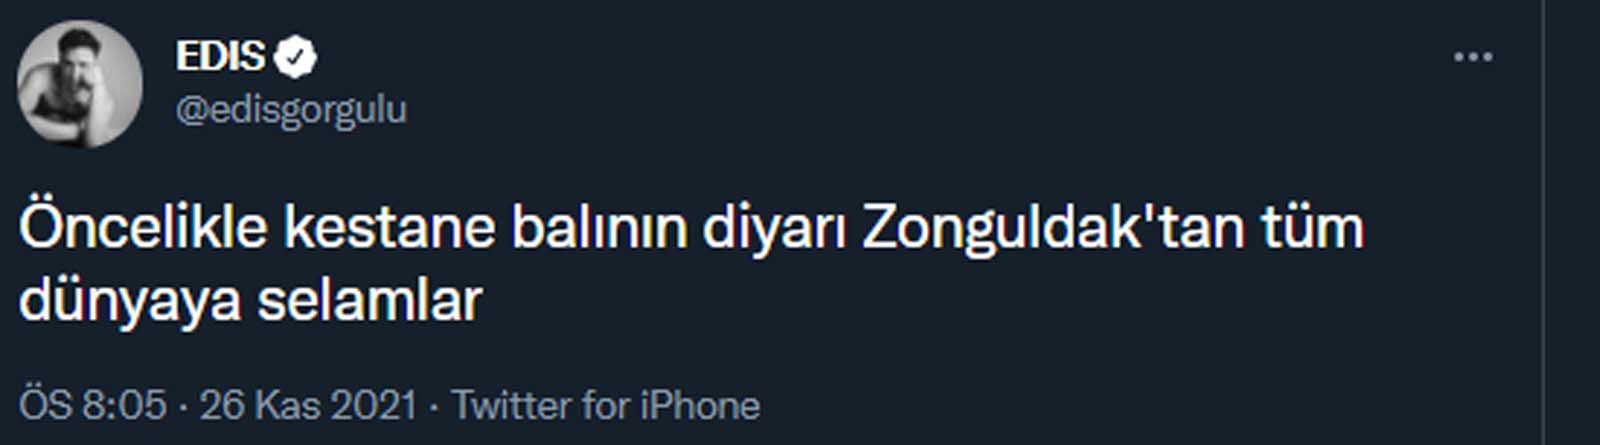 İhanetle suçlanıyordu! 'Kestane balının diyarı Zonguldak'tan selamlar' diyerek sosyal medyada gündem oldu!